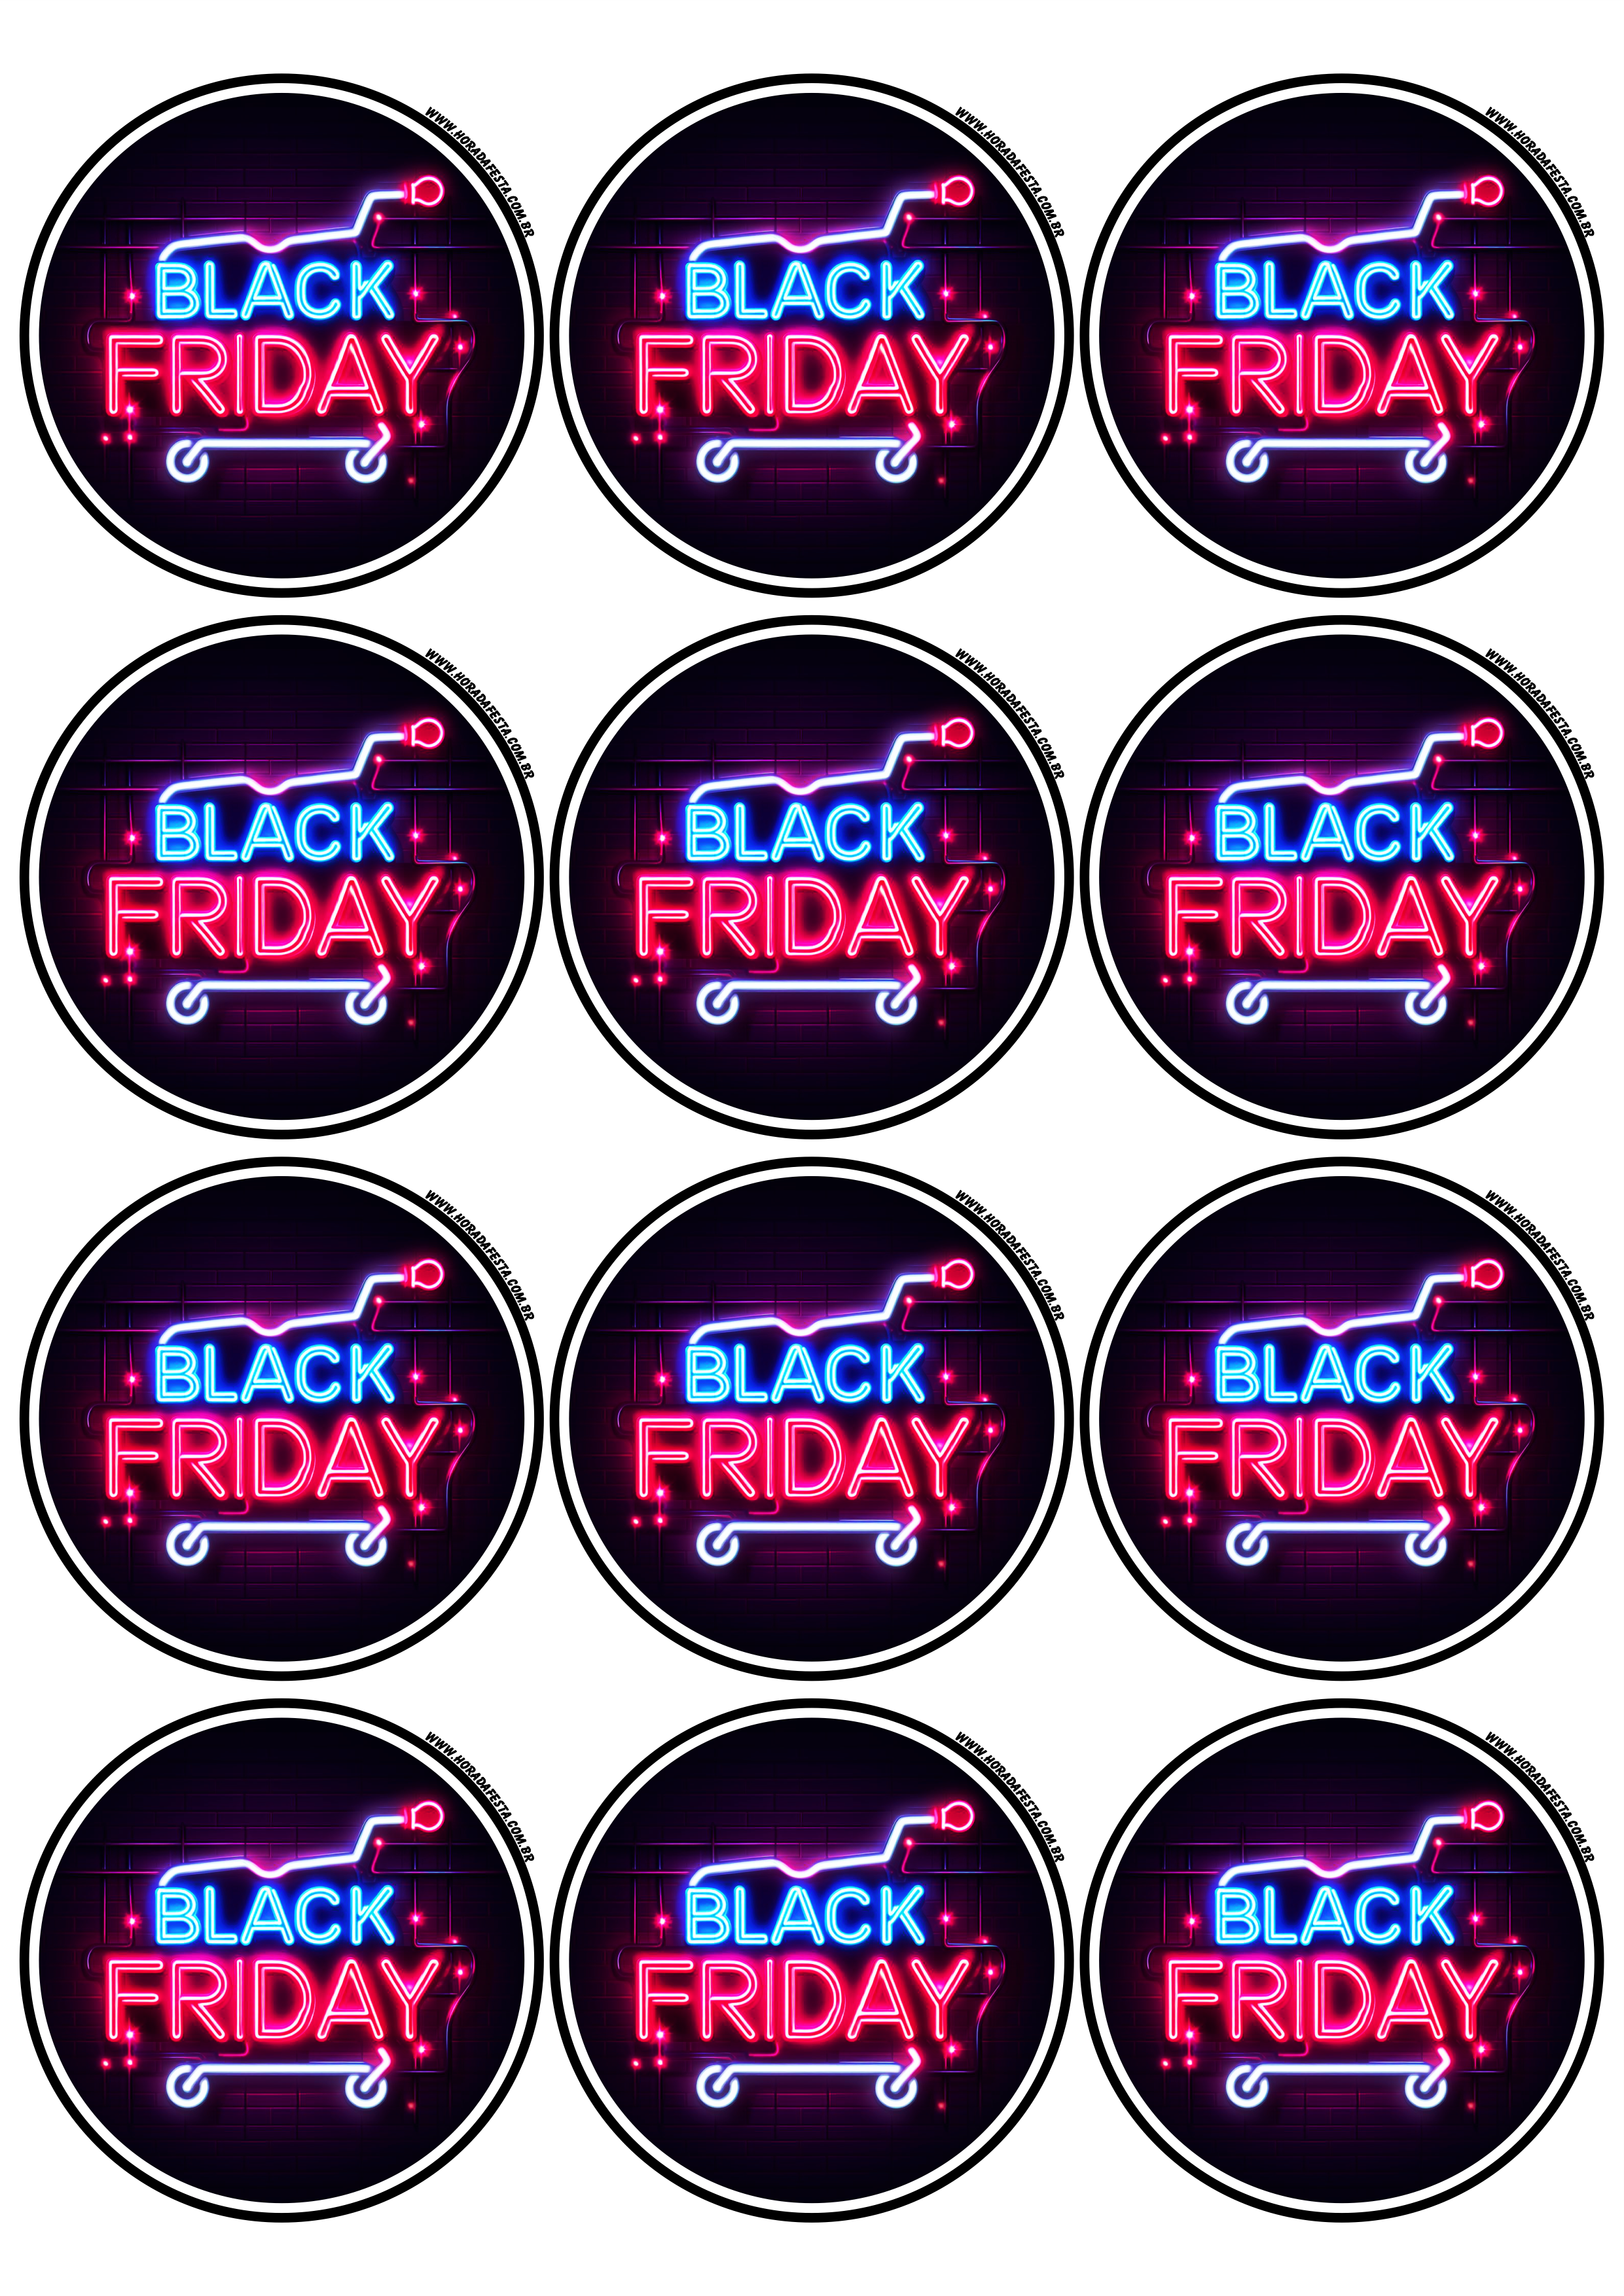 Black Friday adesivo redondo tag sticker painel artes gráficas lojas online promoções 12 imagens png